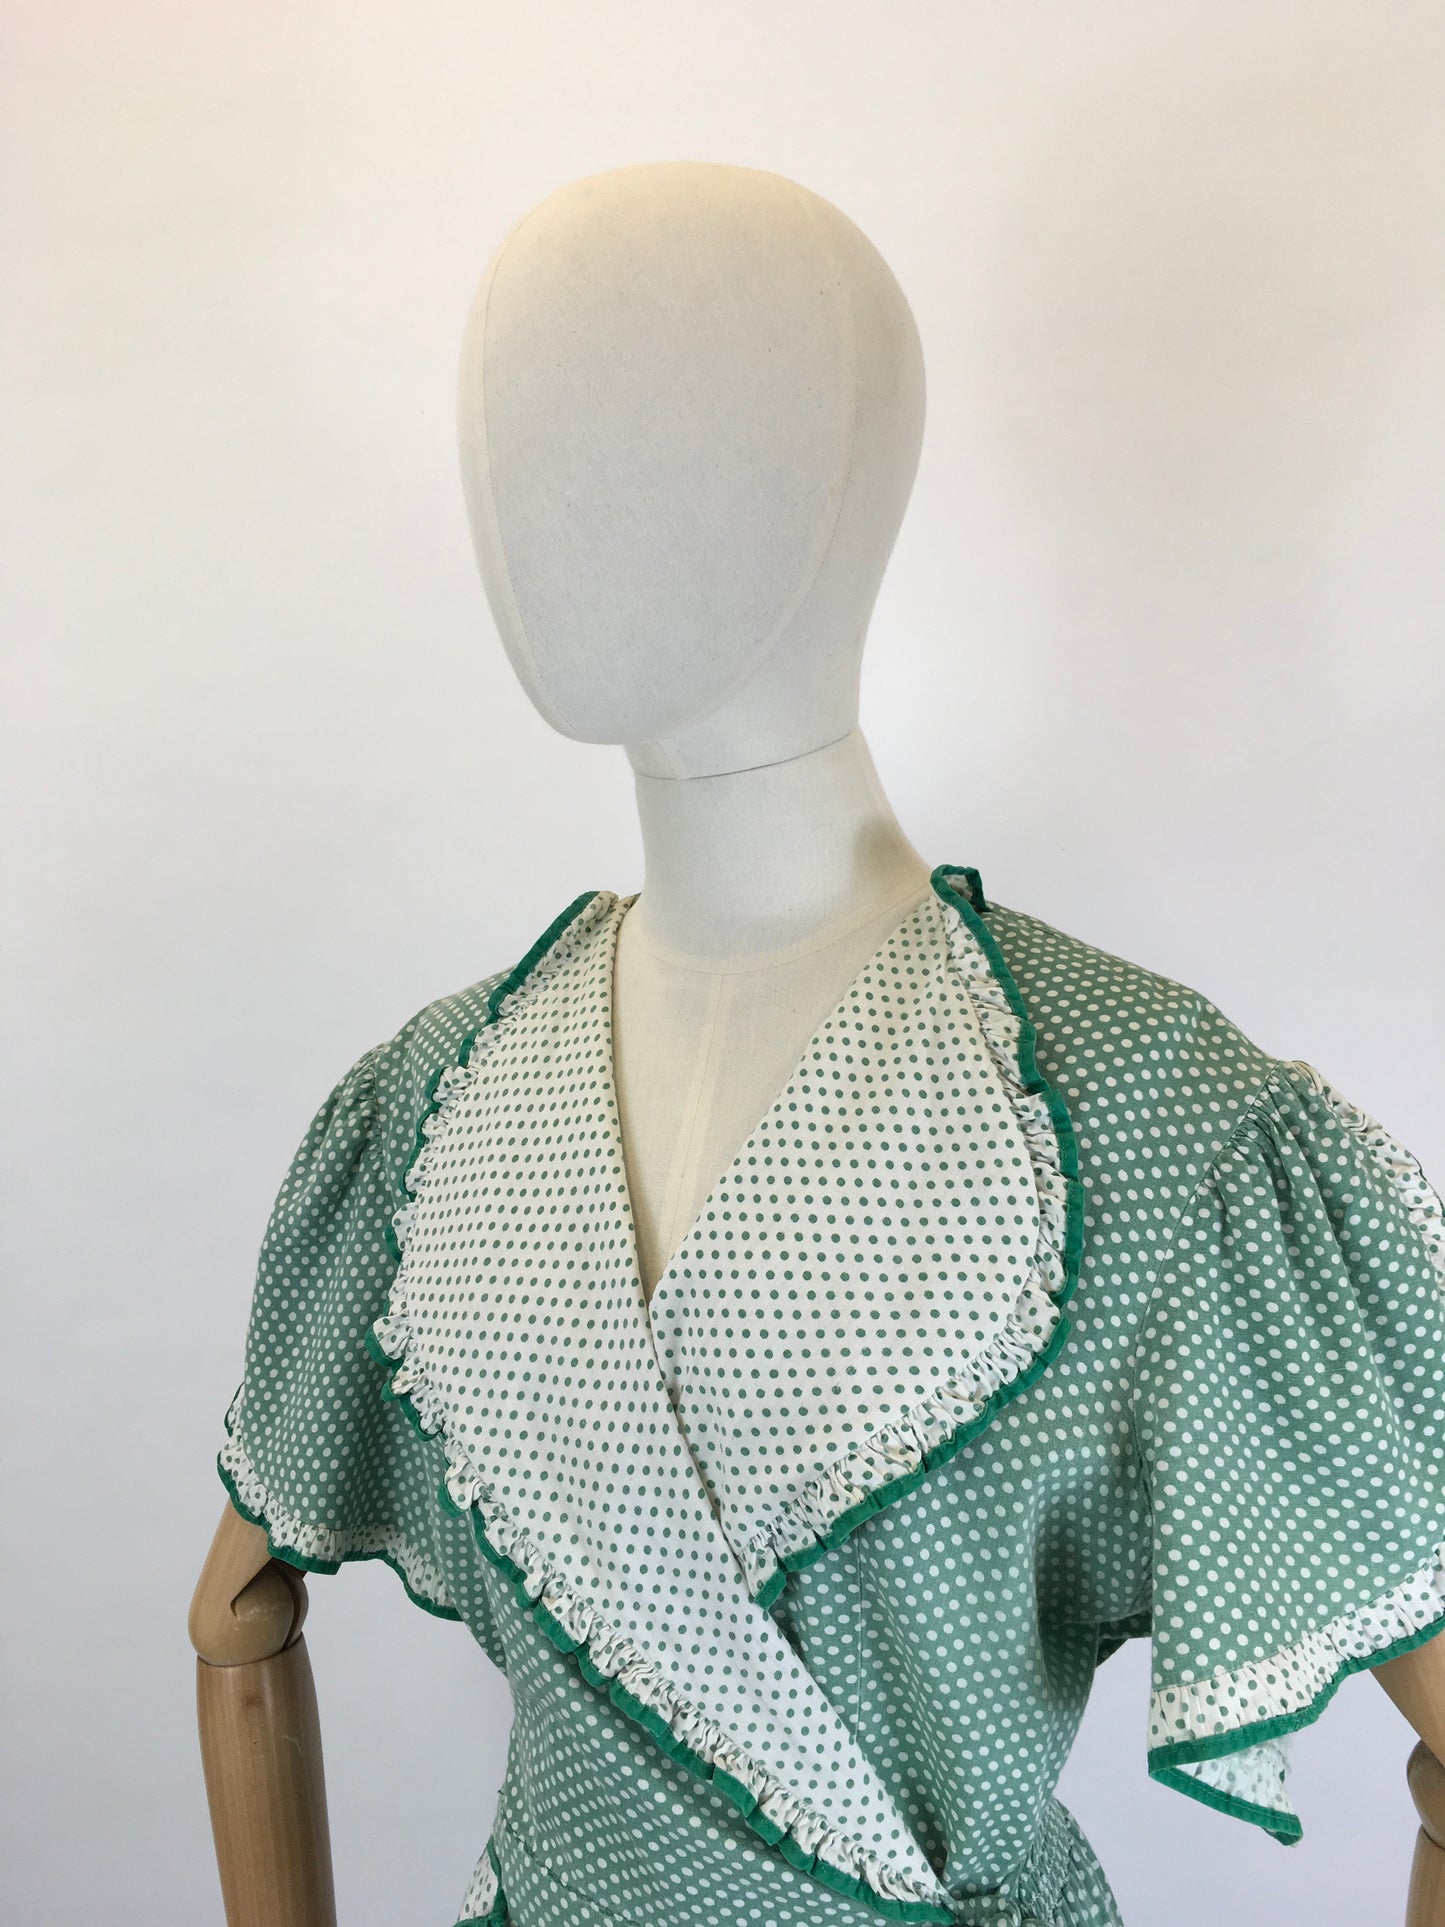 Original 1940’s SENSATIONAL Wrap House Dress - In A Fabulous Green & White Polka Dot